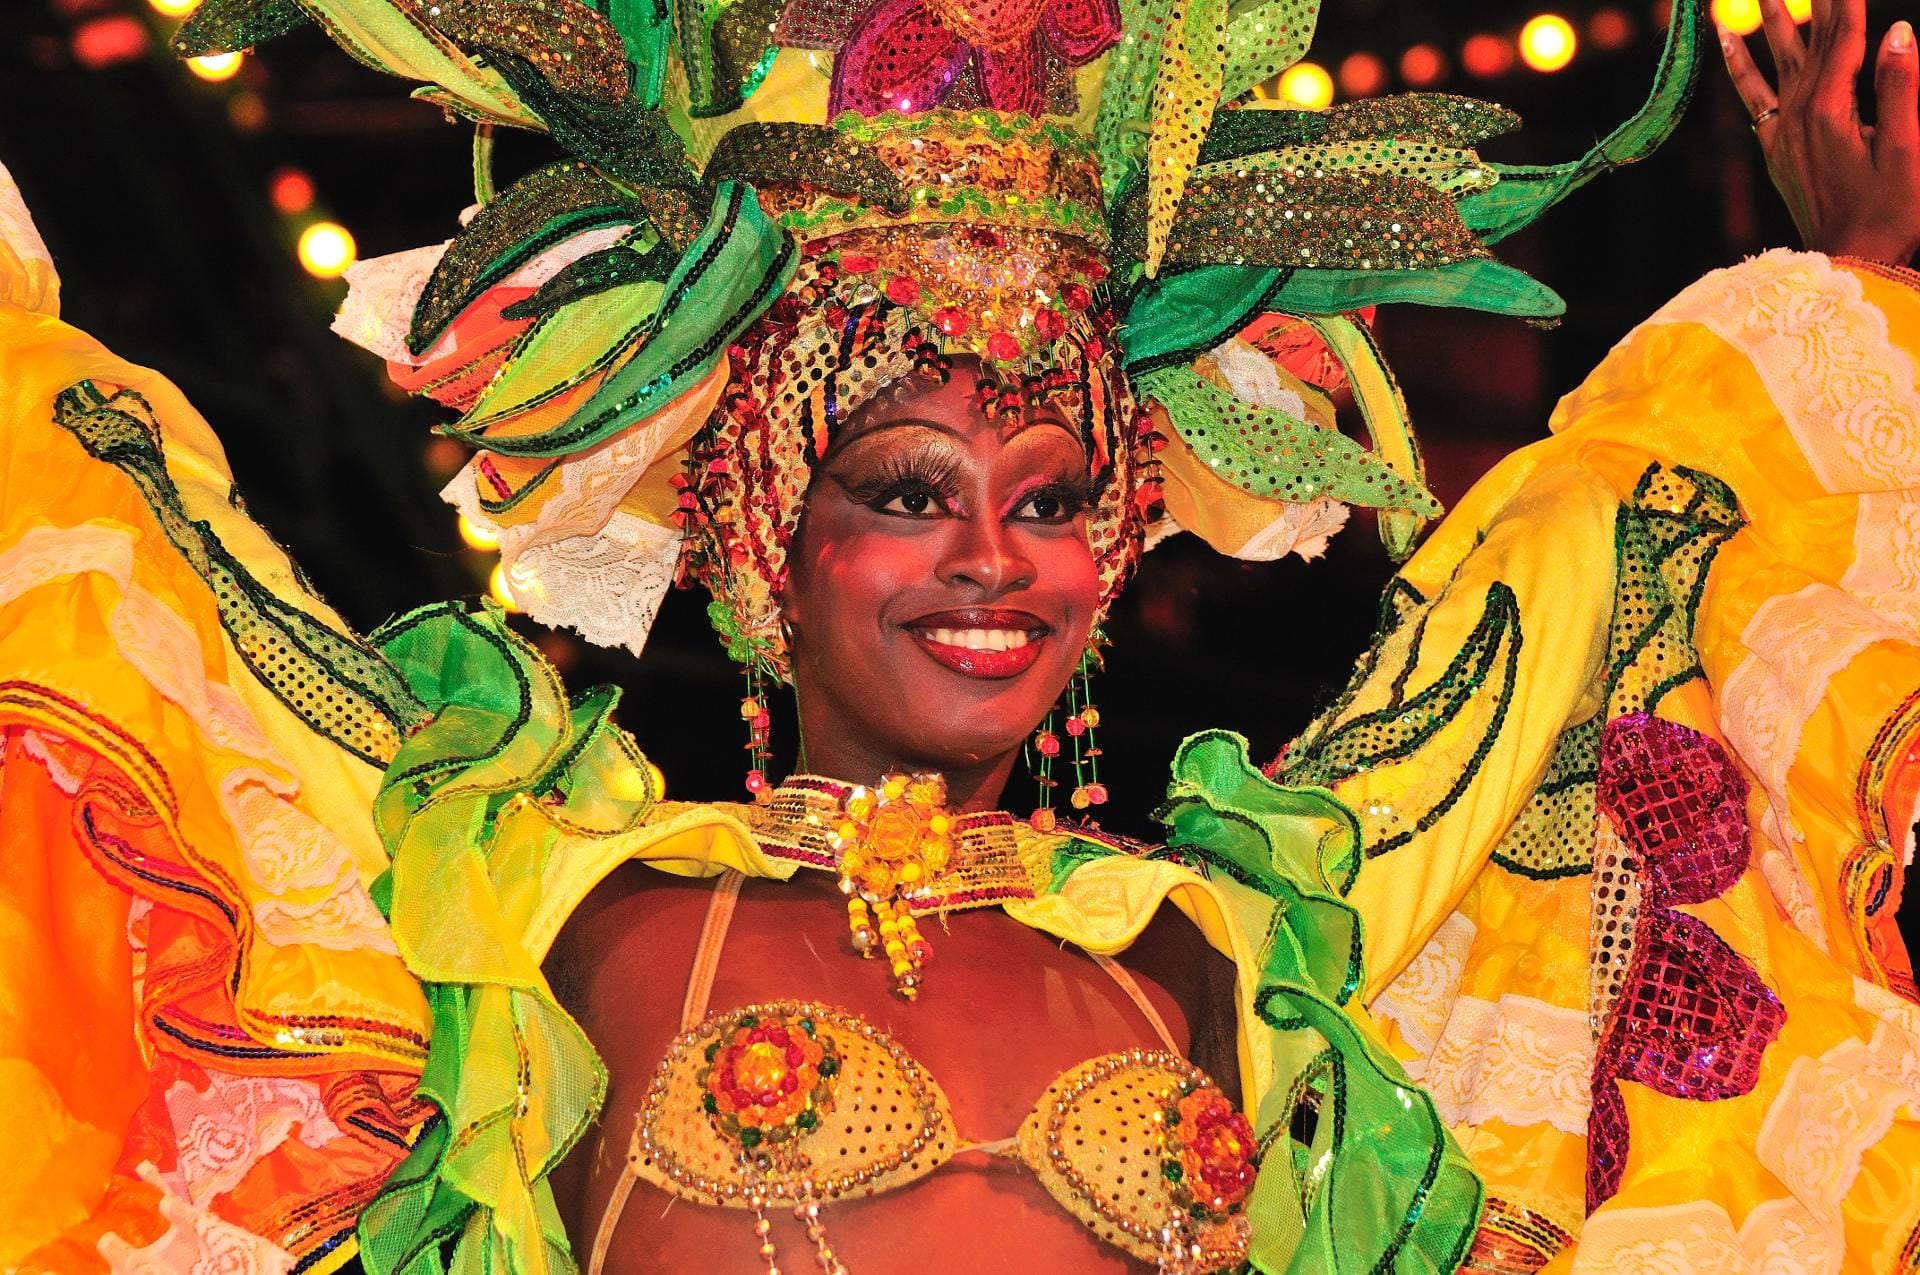 Präsentiert wird brasilianische Tanzkultur, angefangen bei Ureinwohnern bis zum Karneval. Höhepunkt sind die temperamentvollen TänzerInnen in ihren Karnevalskostümen.